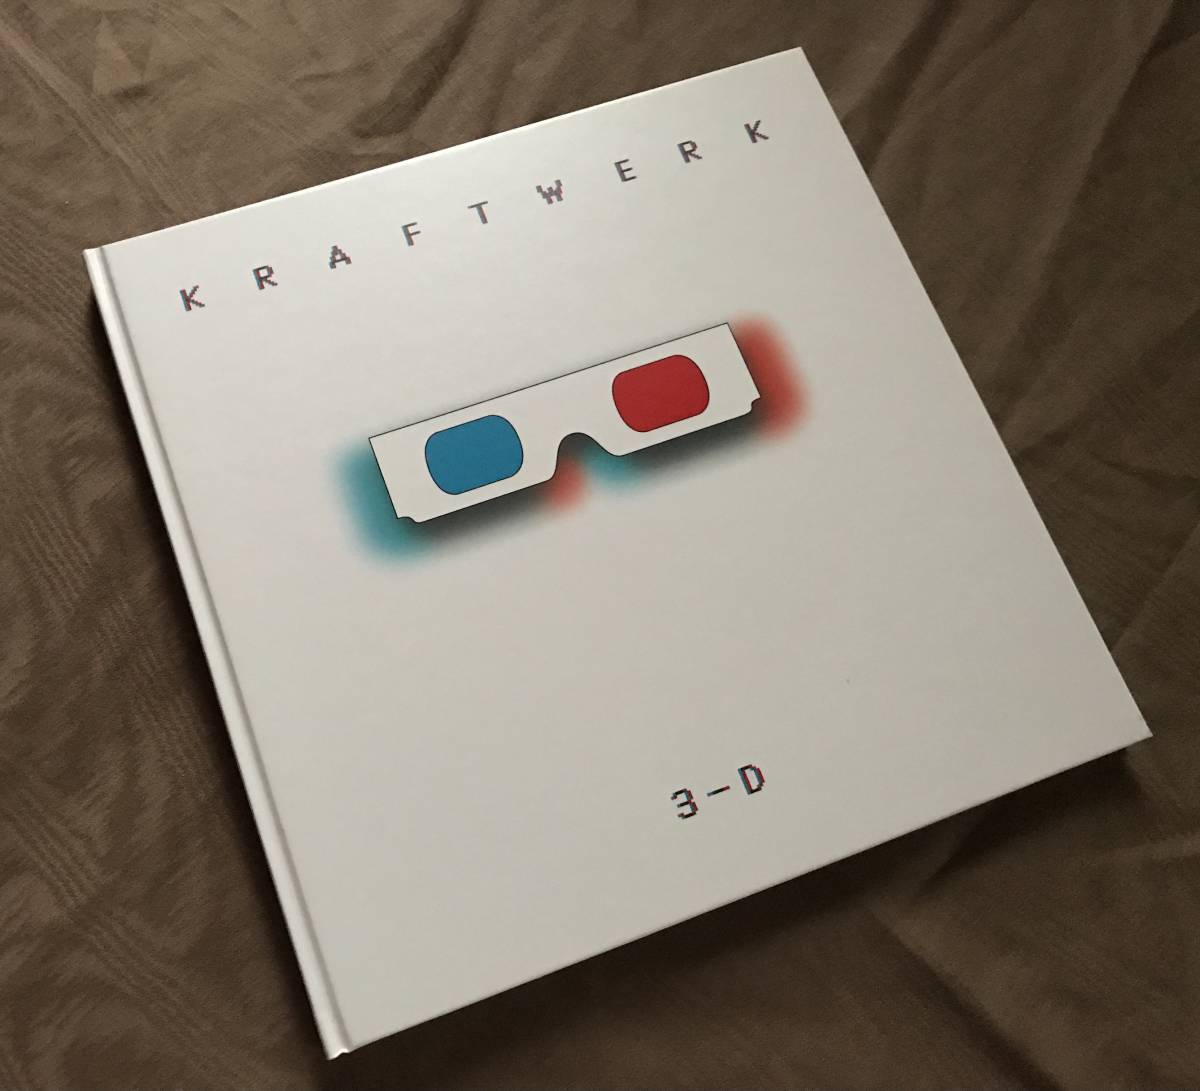  иностранная книга KRAFTWERK LIVE 3-D прекрасный товар поиск : craft Work фотоальбом брошюра EP LP CD